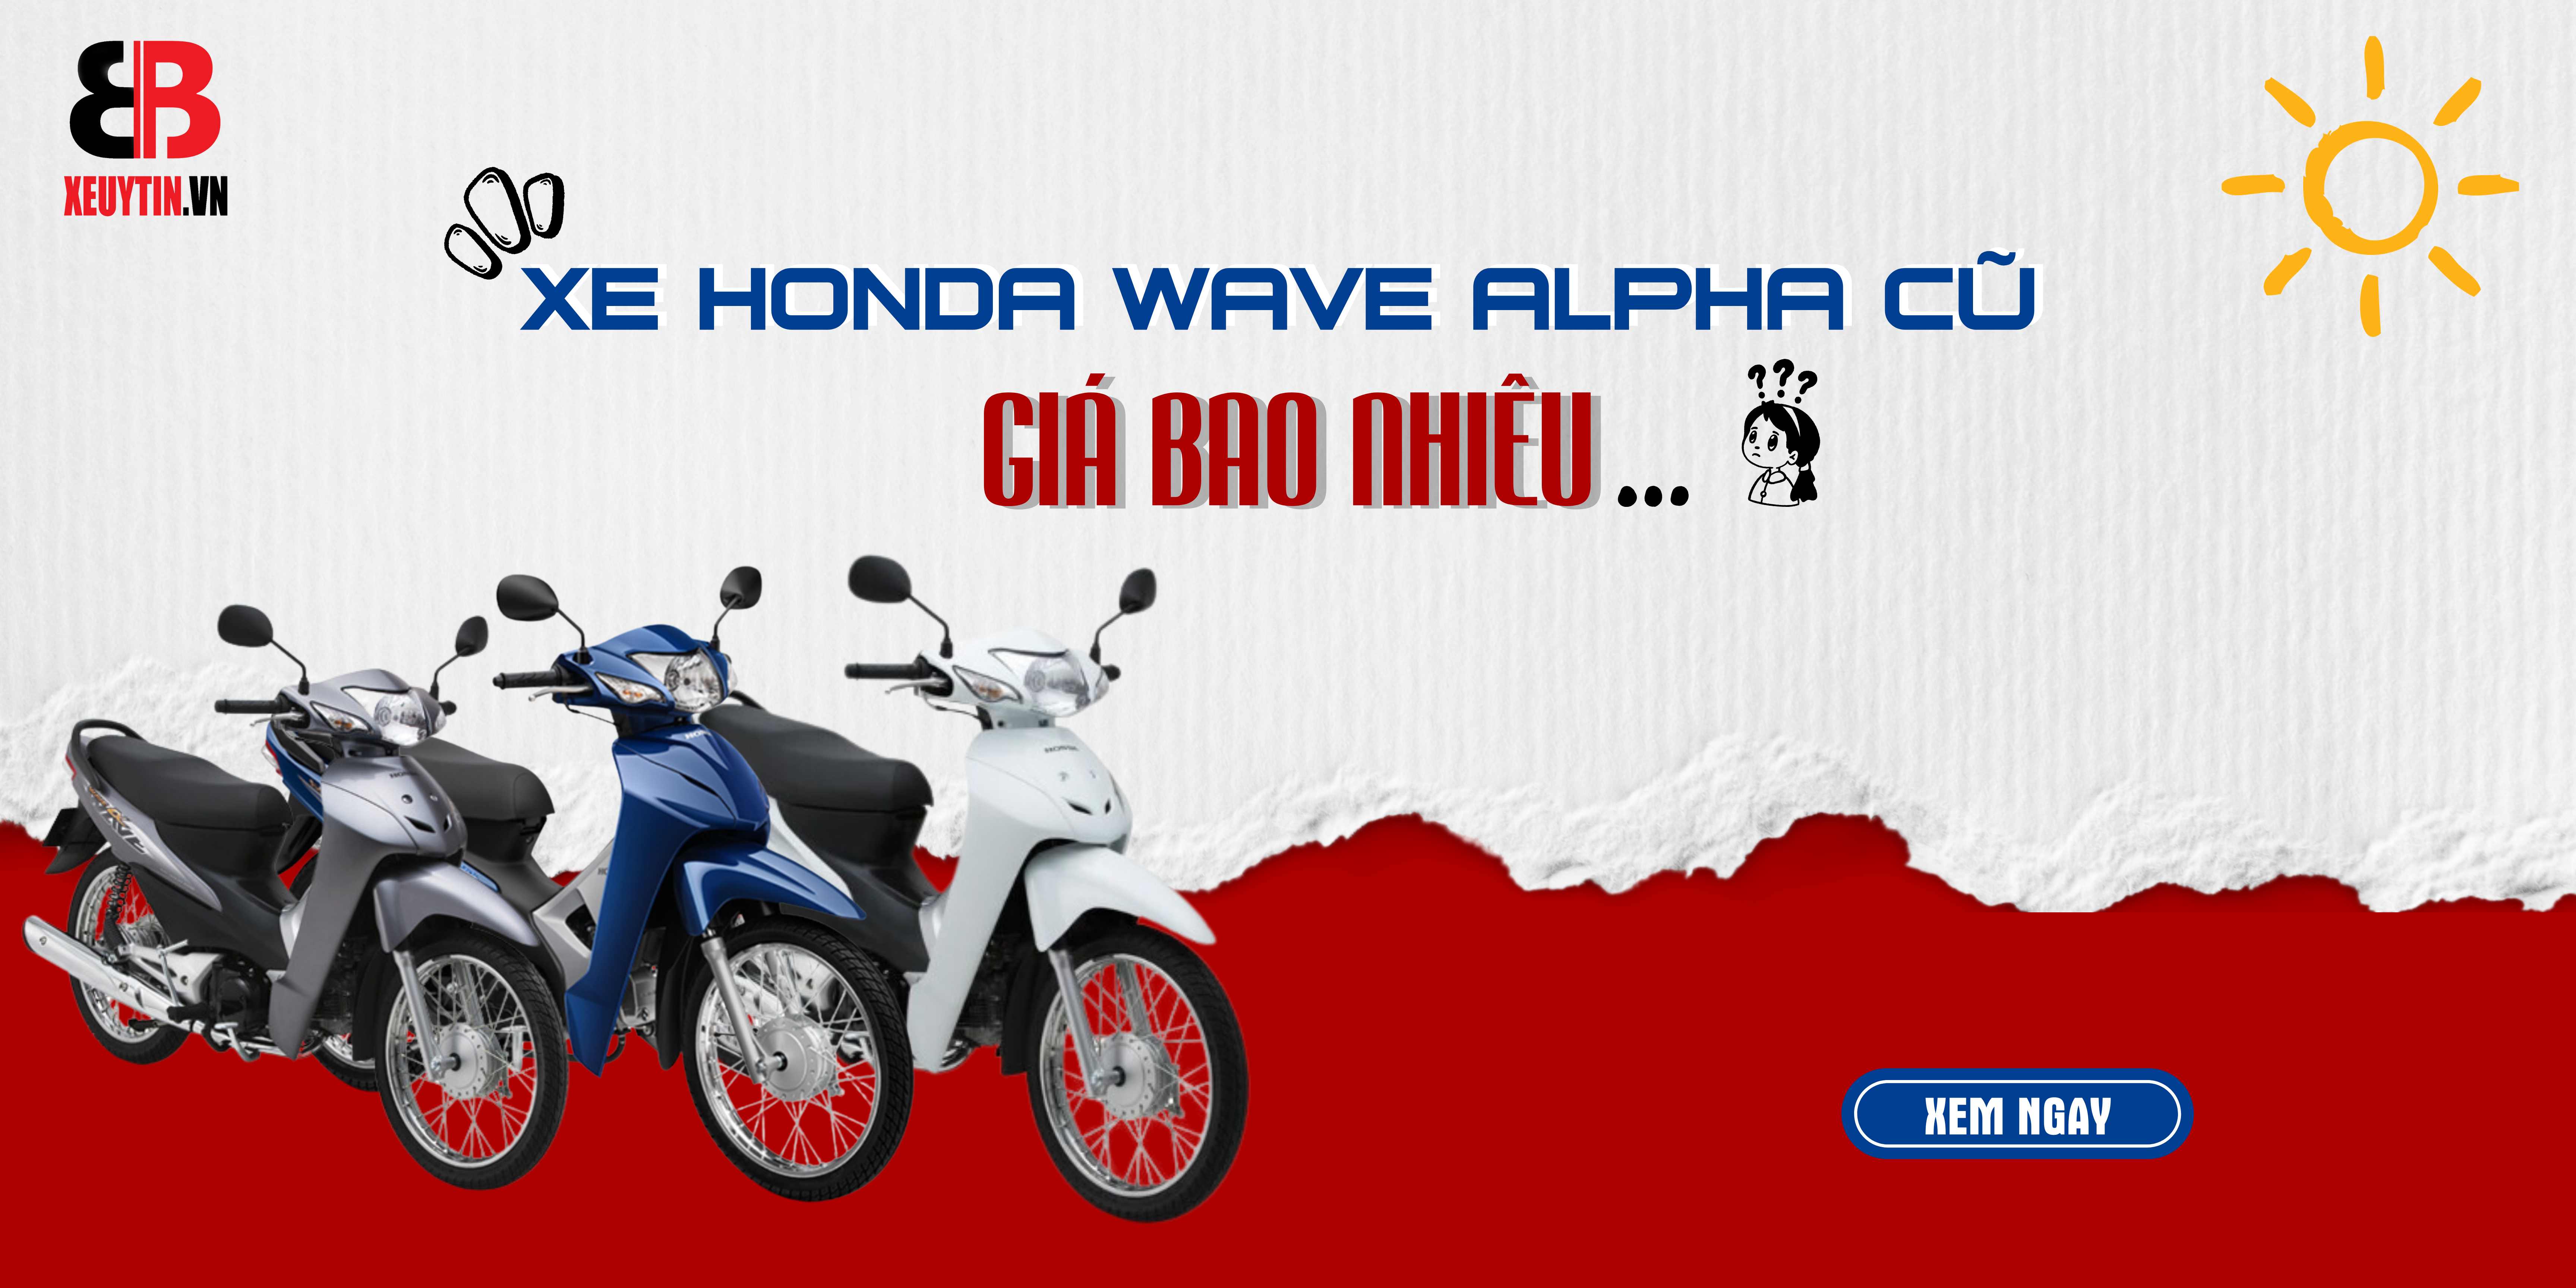 Xe Honda Wave Alpha Cũ Giá Bao Nhiêu – Lựa Chọn Tiết Kiệm và Hiệu Quả.